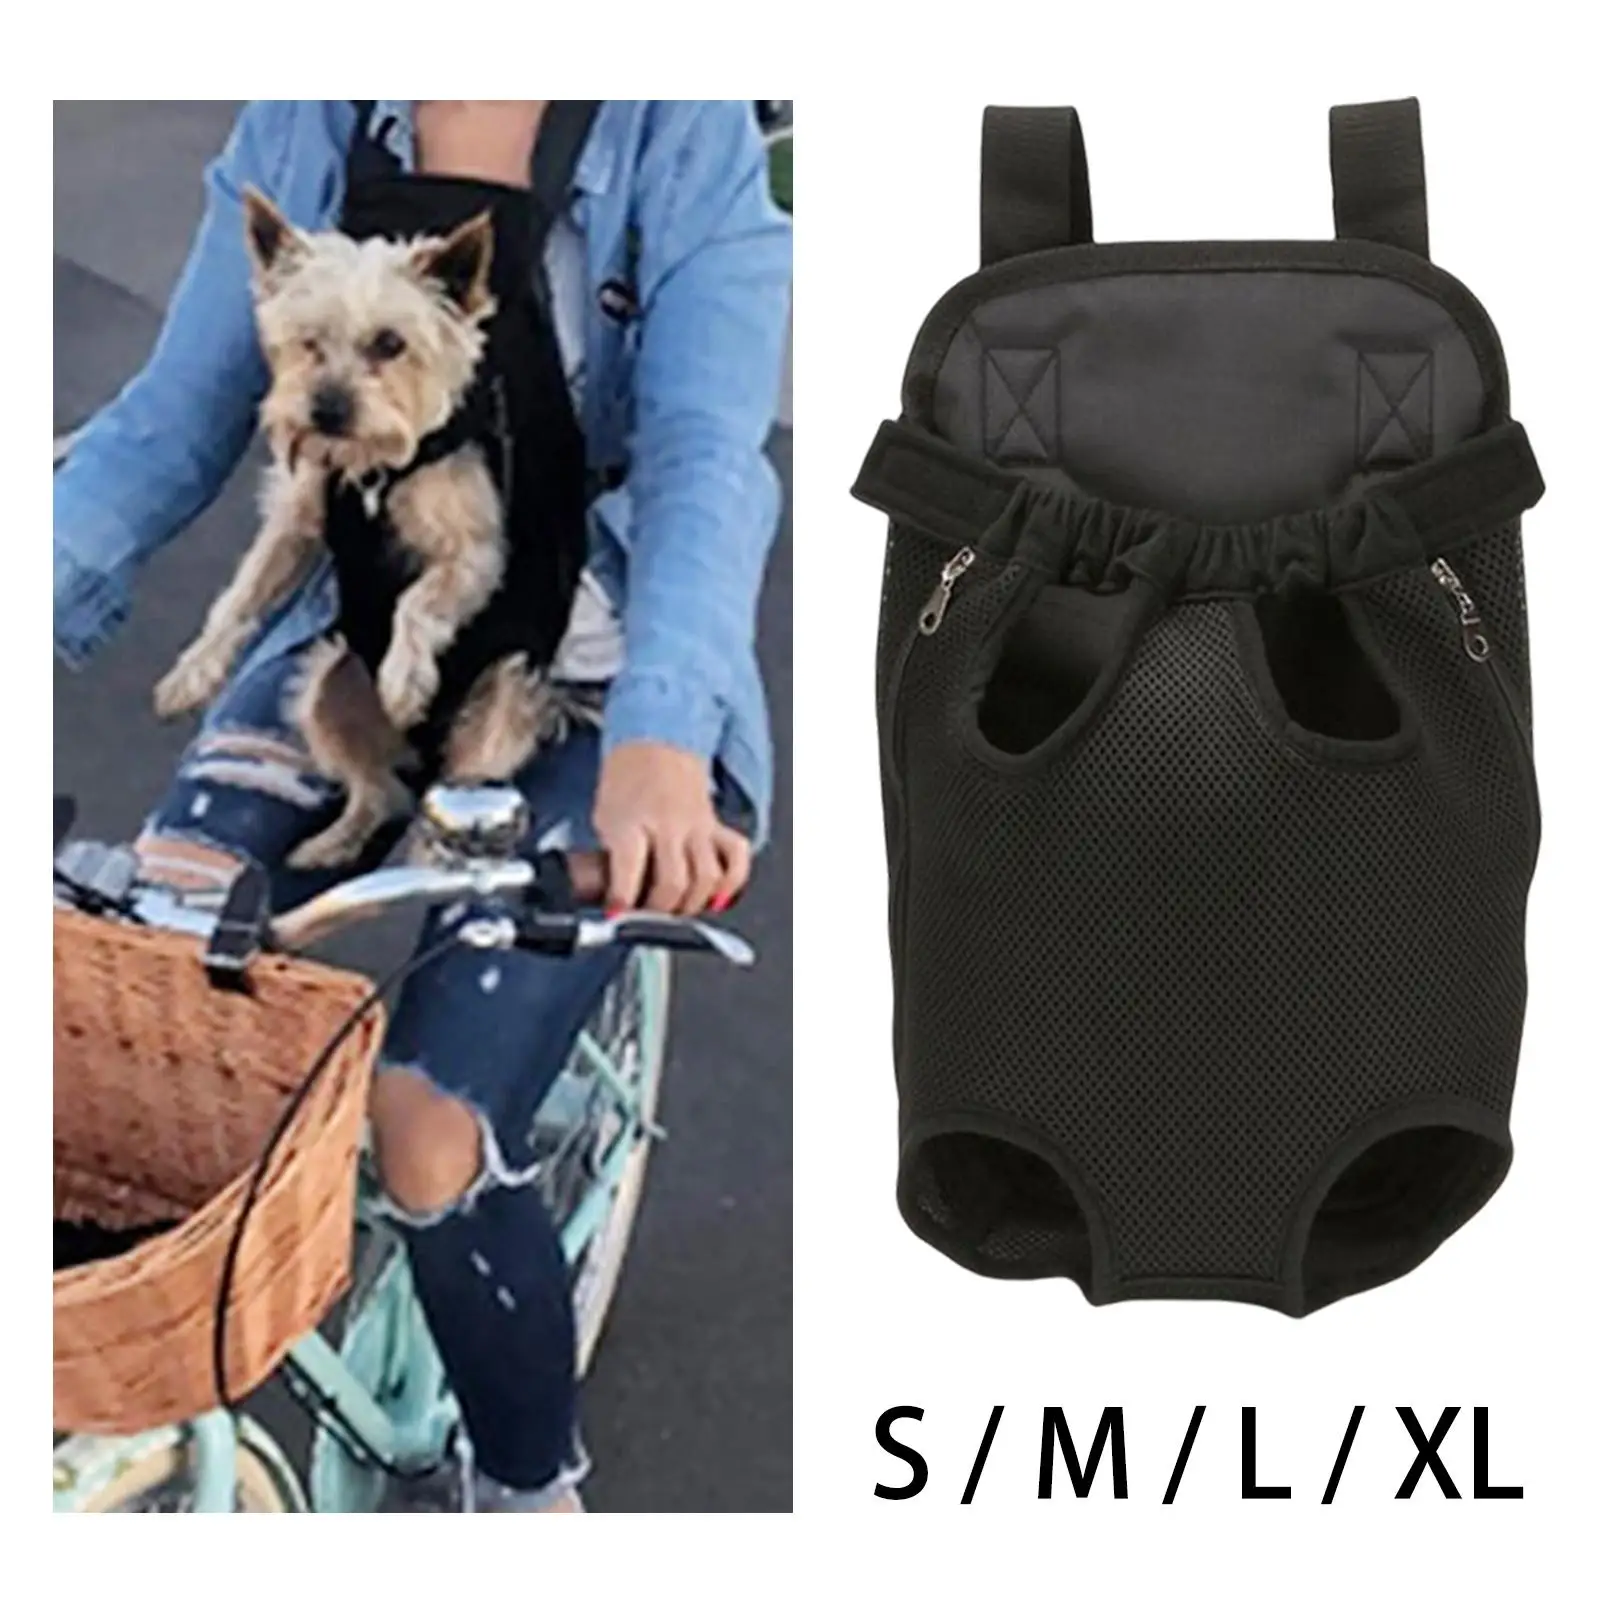 Dog Carrier Backpack Cat Chest Bag Shoulder Strap Adjustable Front Carrier Hands Free Portable Puppy Carrier for Traveling